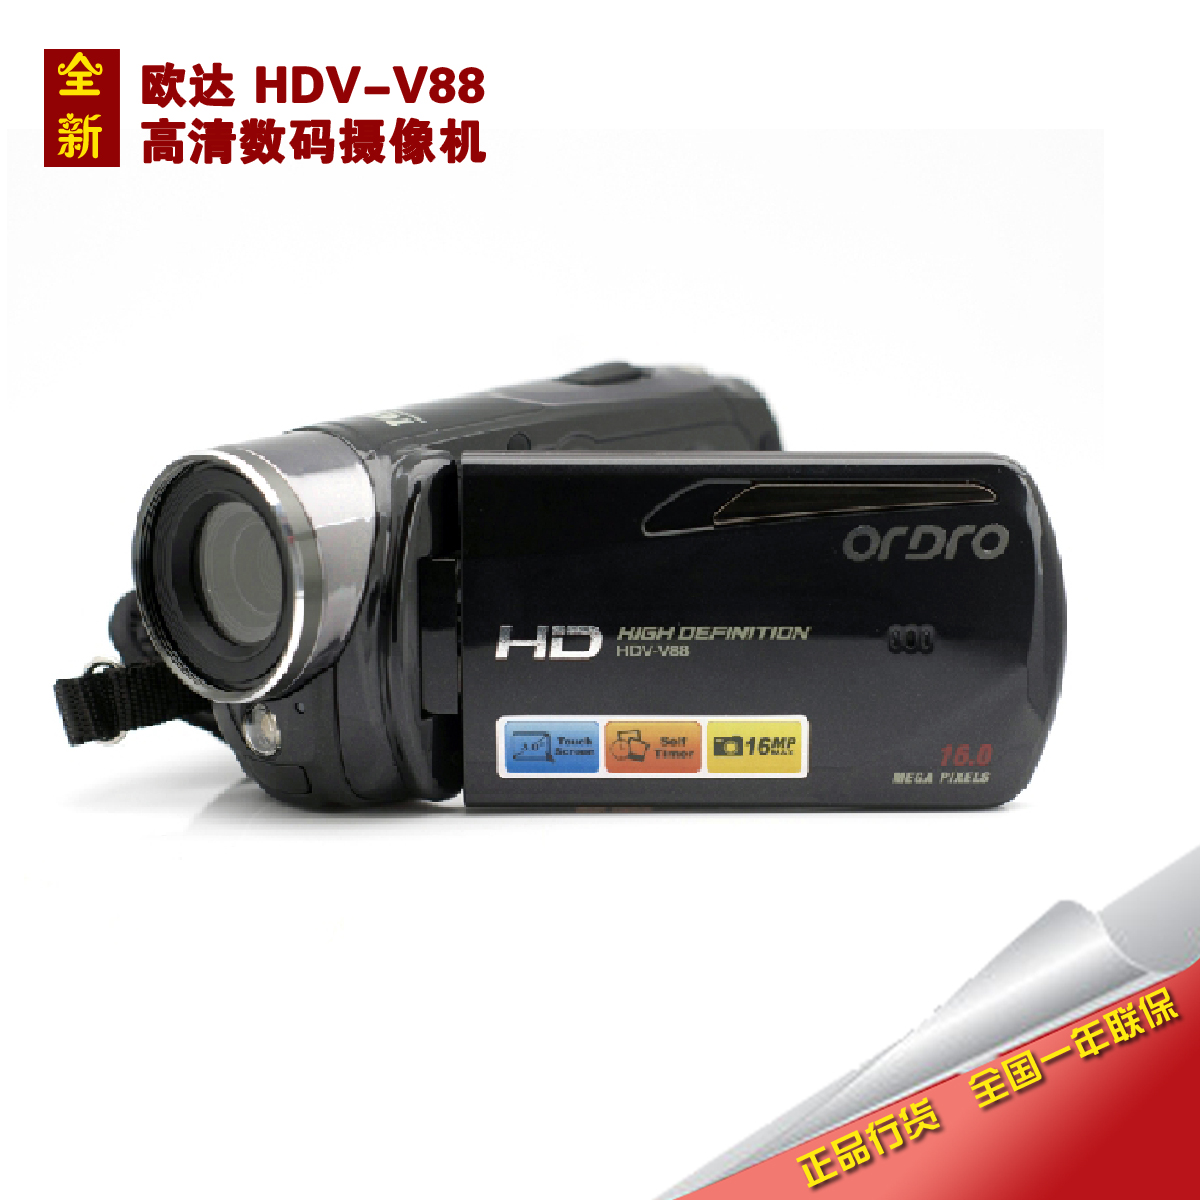 国行 Ordro\/欧达 HDV-V88 全高清数码摄像机D